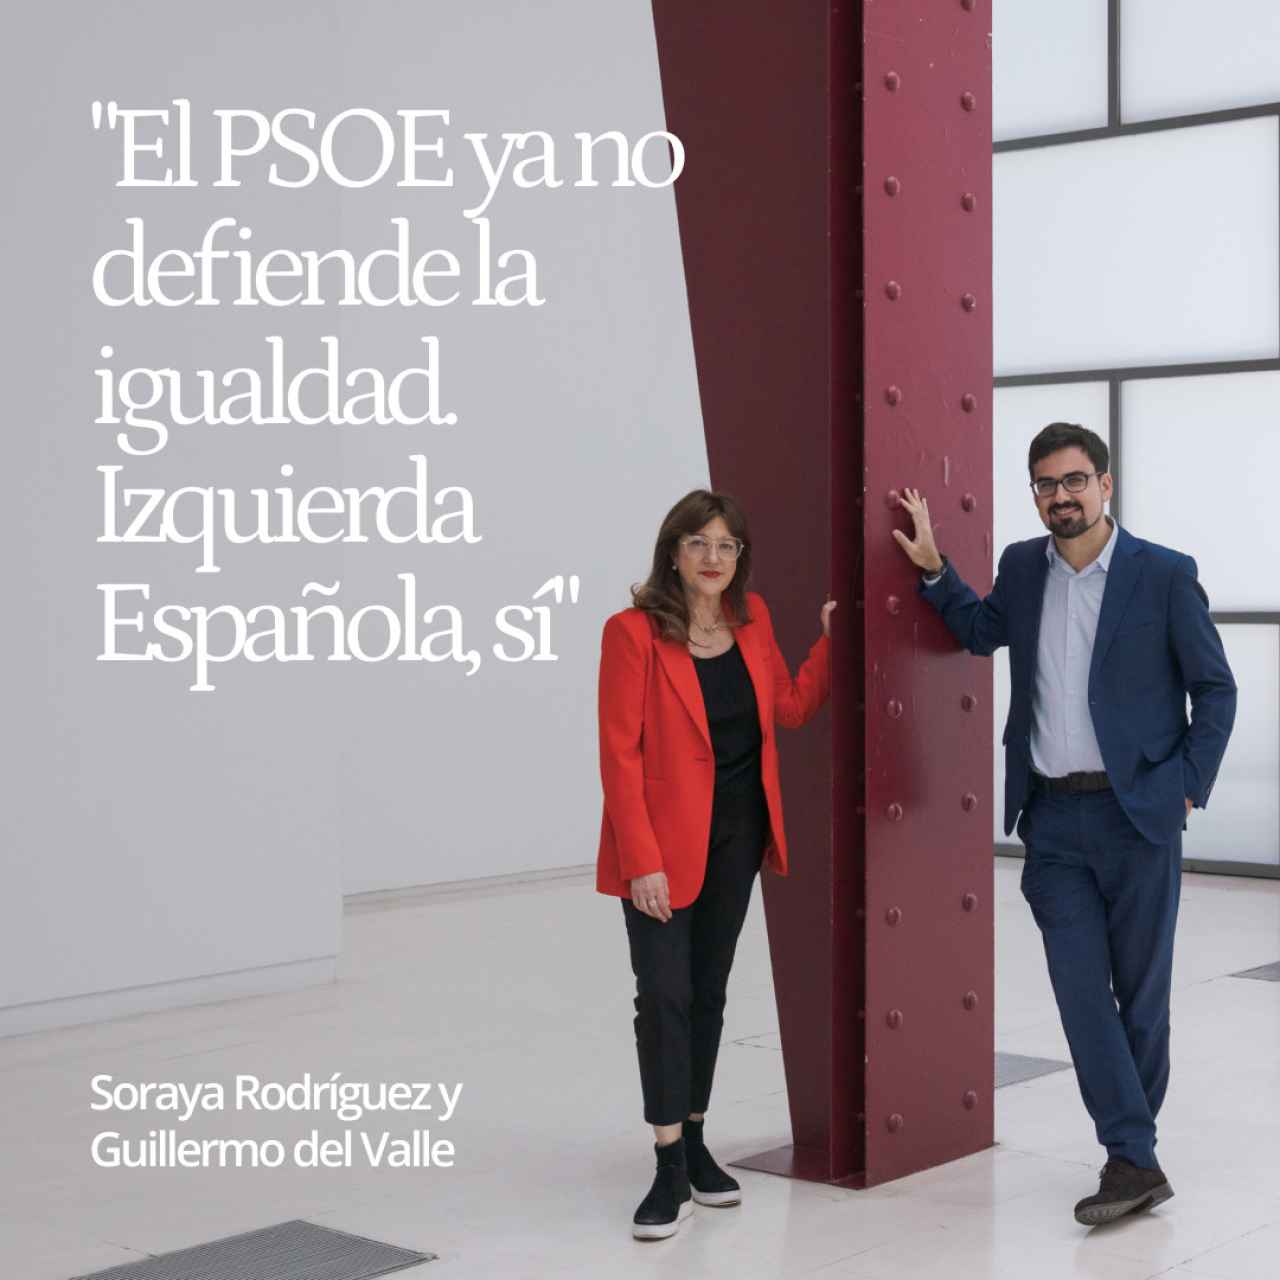 Soraya Rodríguez y Del Valle, al alimón: "El PSOE ya no defiende la igualdad. Izquierda Española, sí"